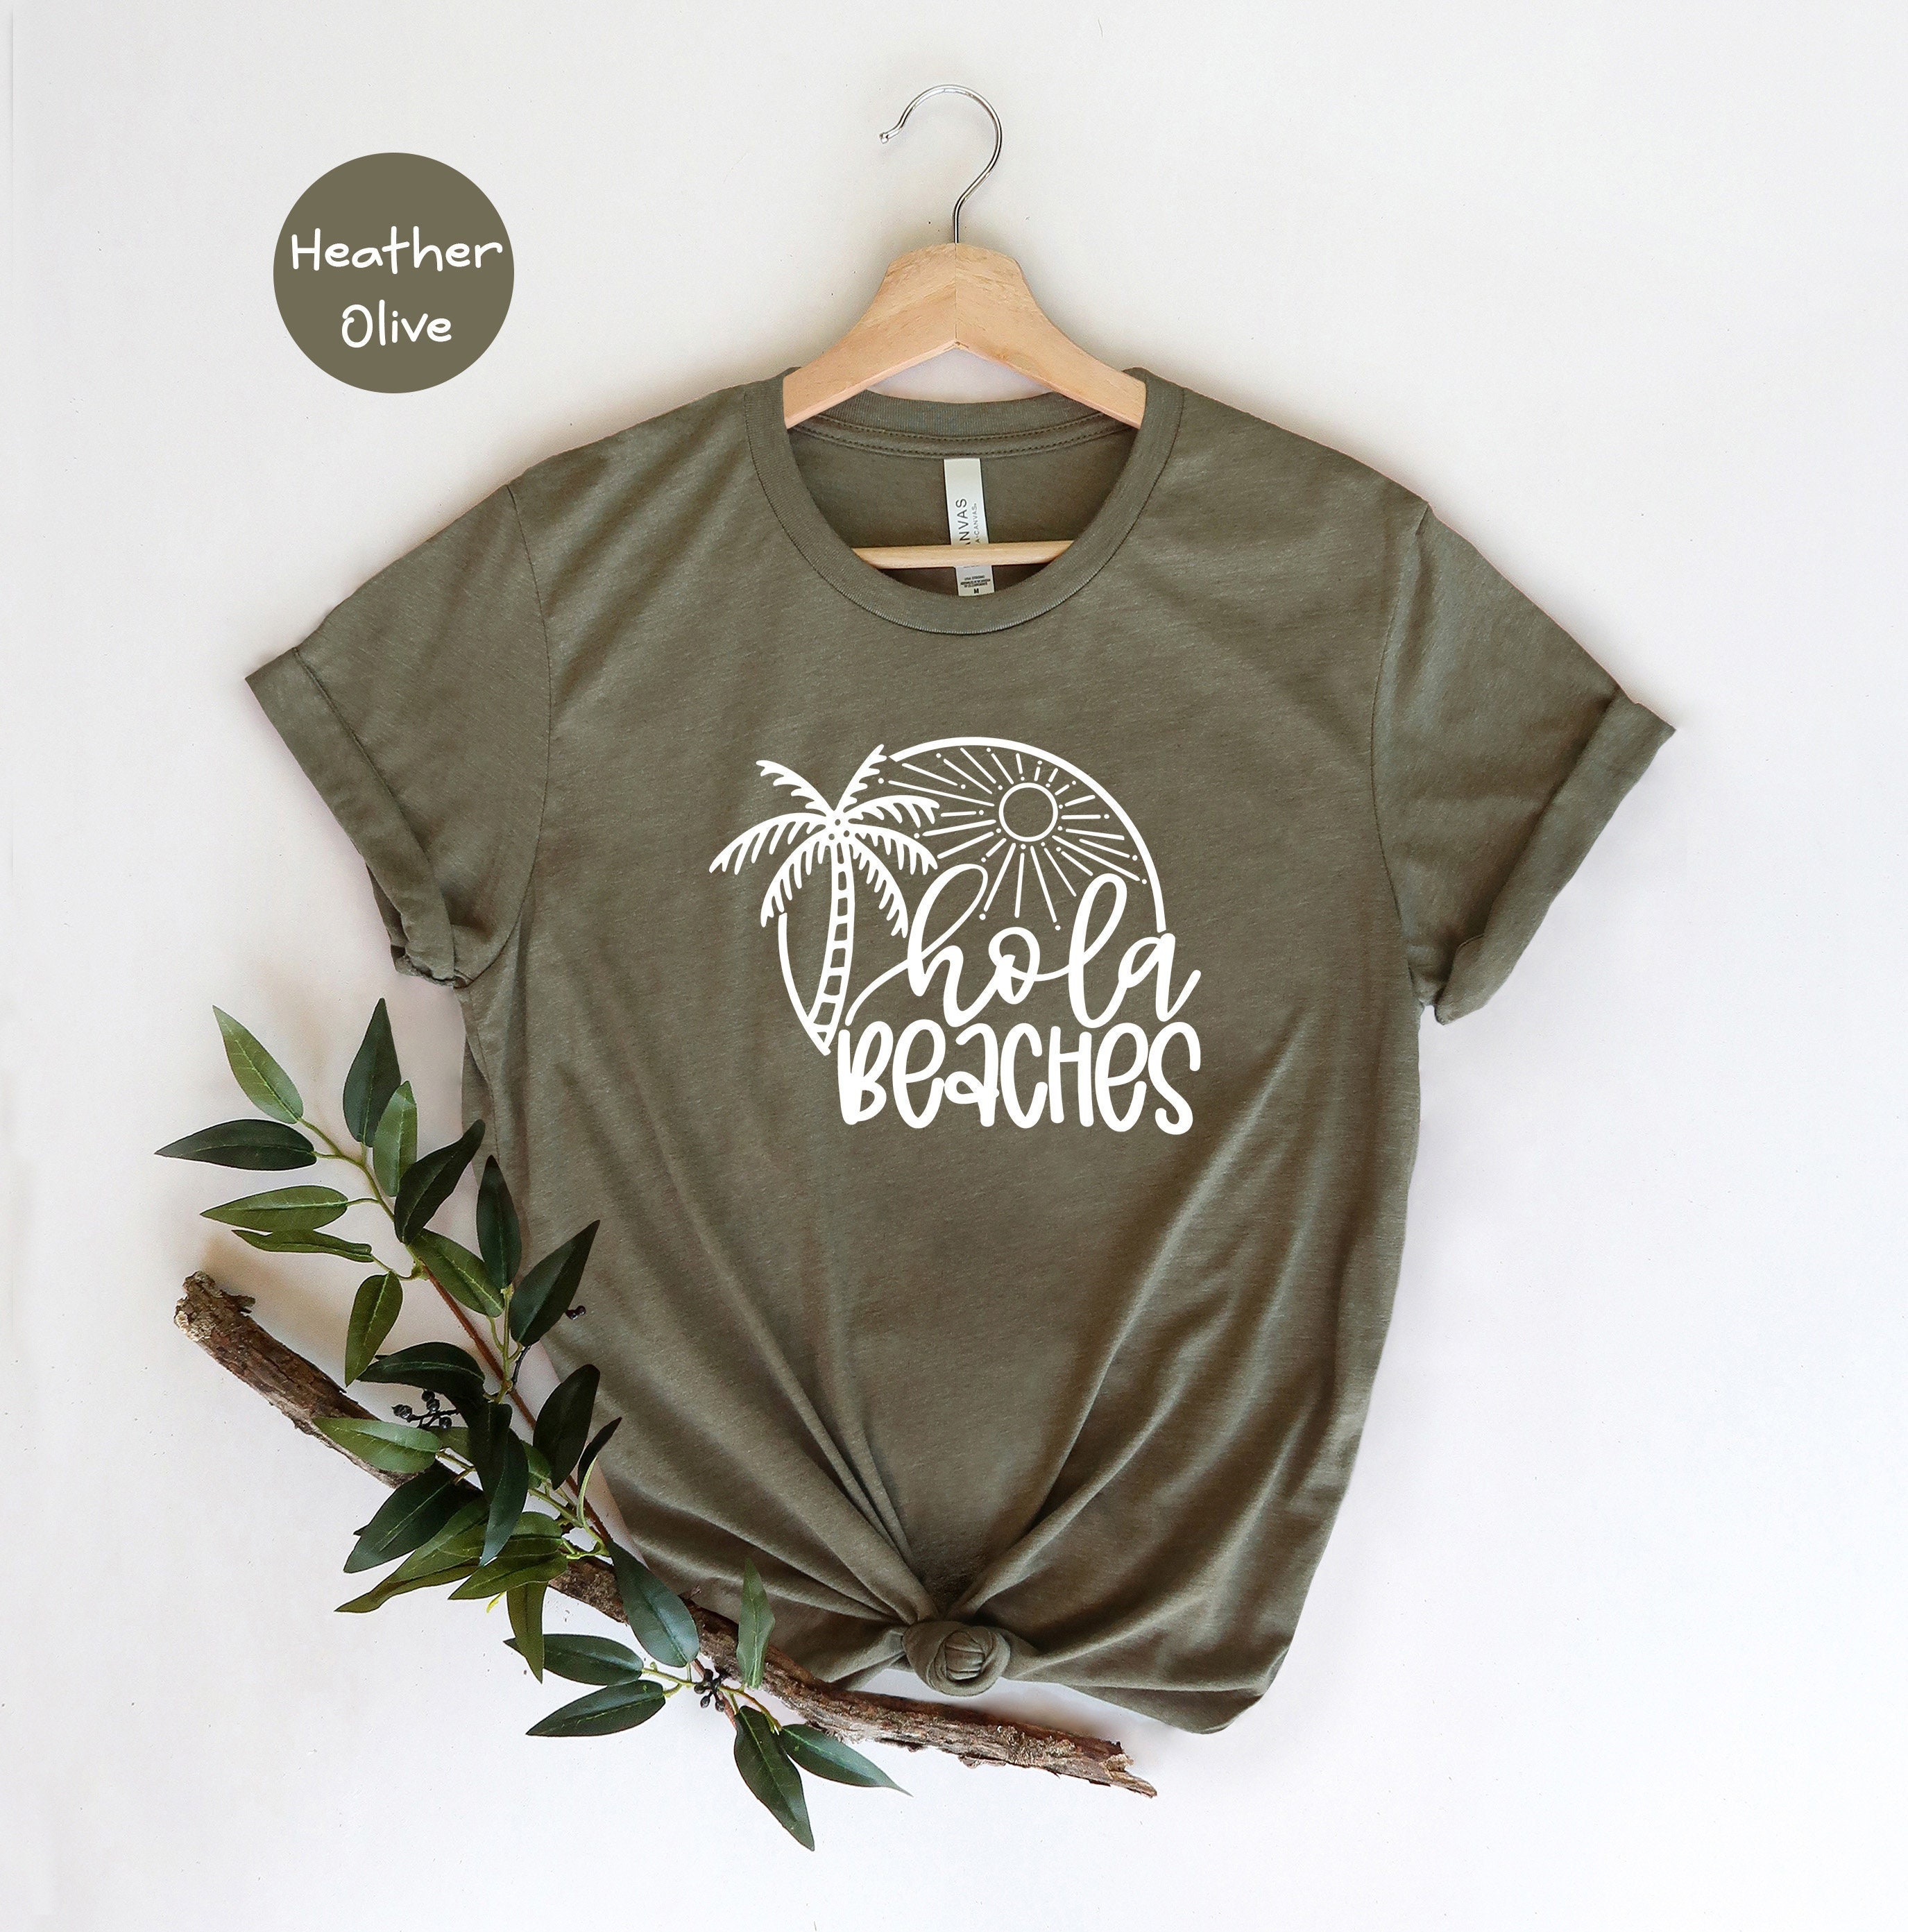 Soeverein Zuinig verkoopplan Hola Beaches Shirt Summer T-shirt Beach Vacay Shirt - Etsy